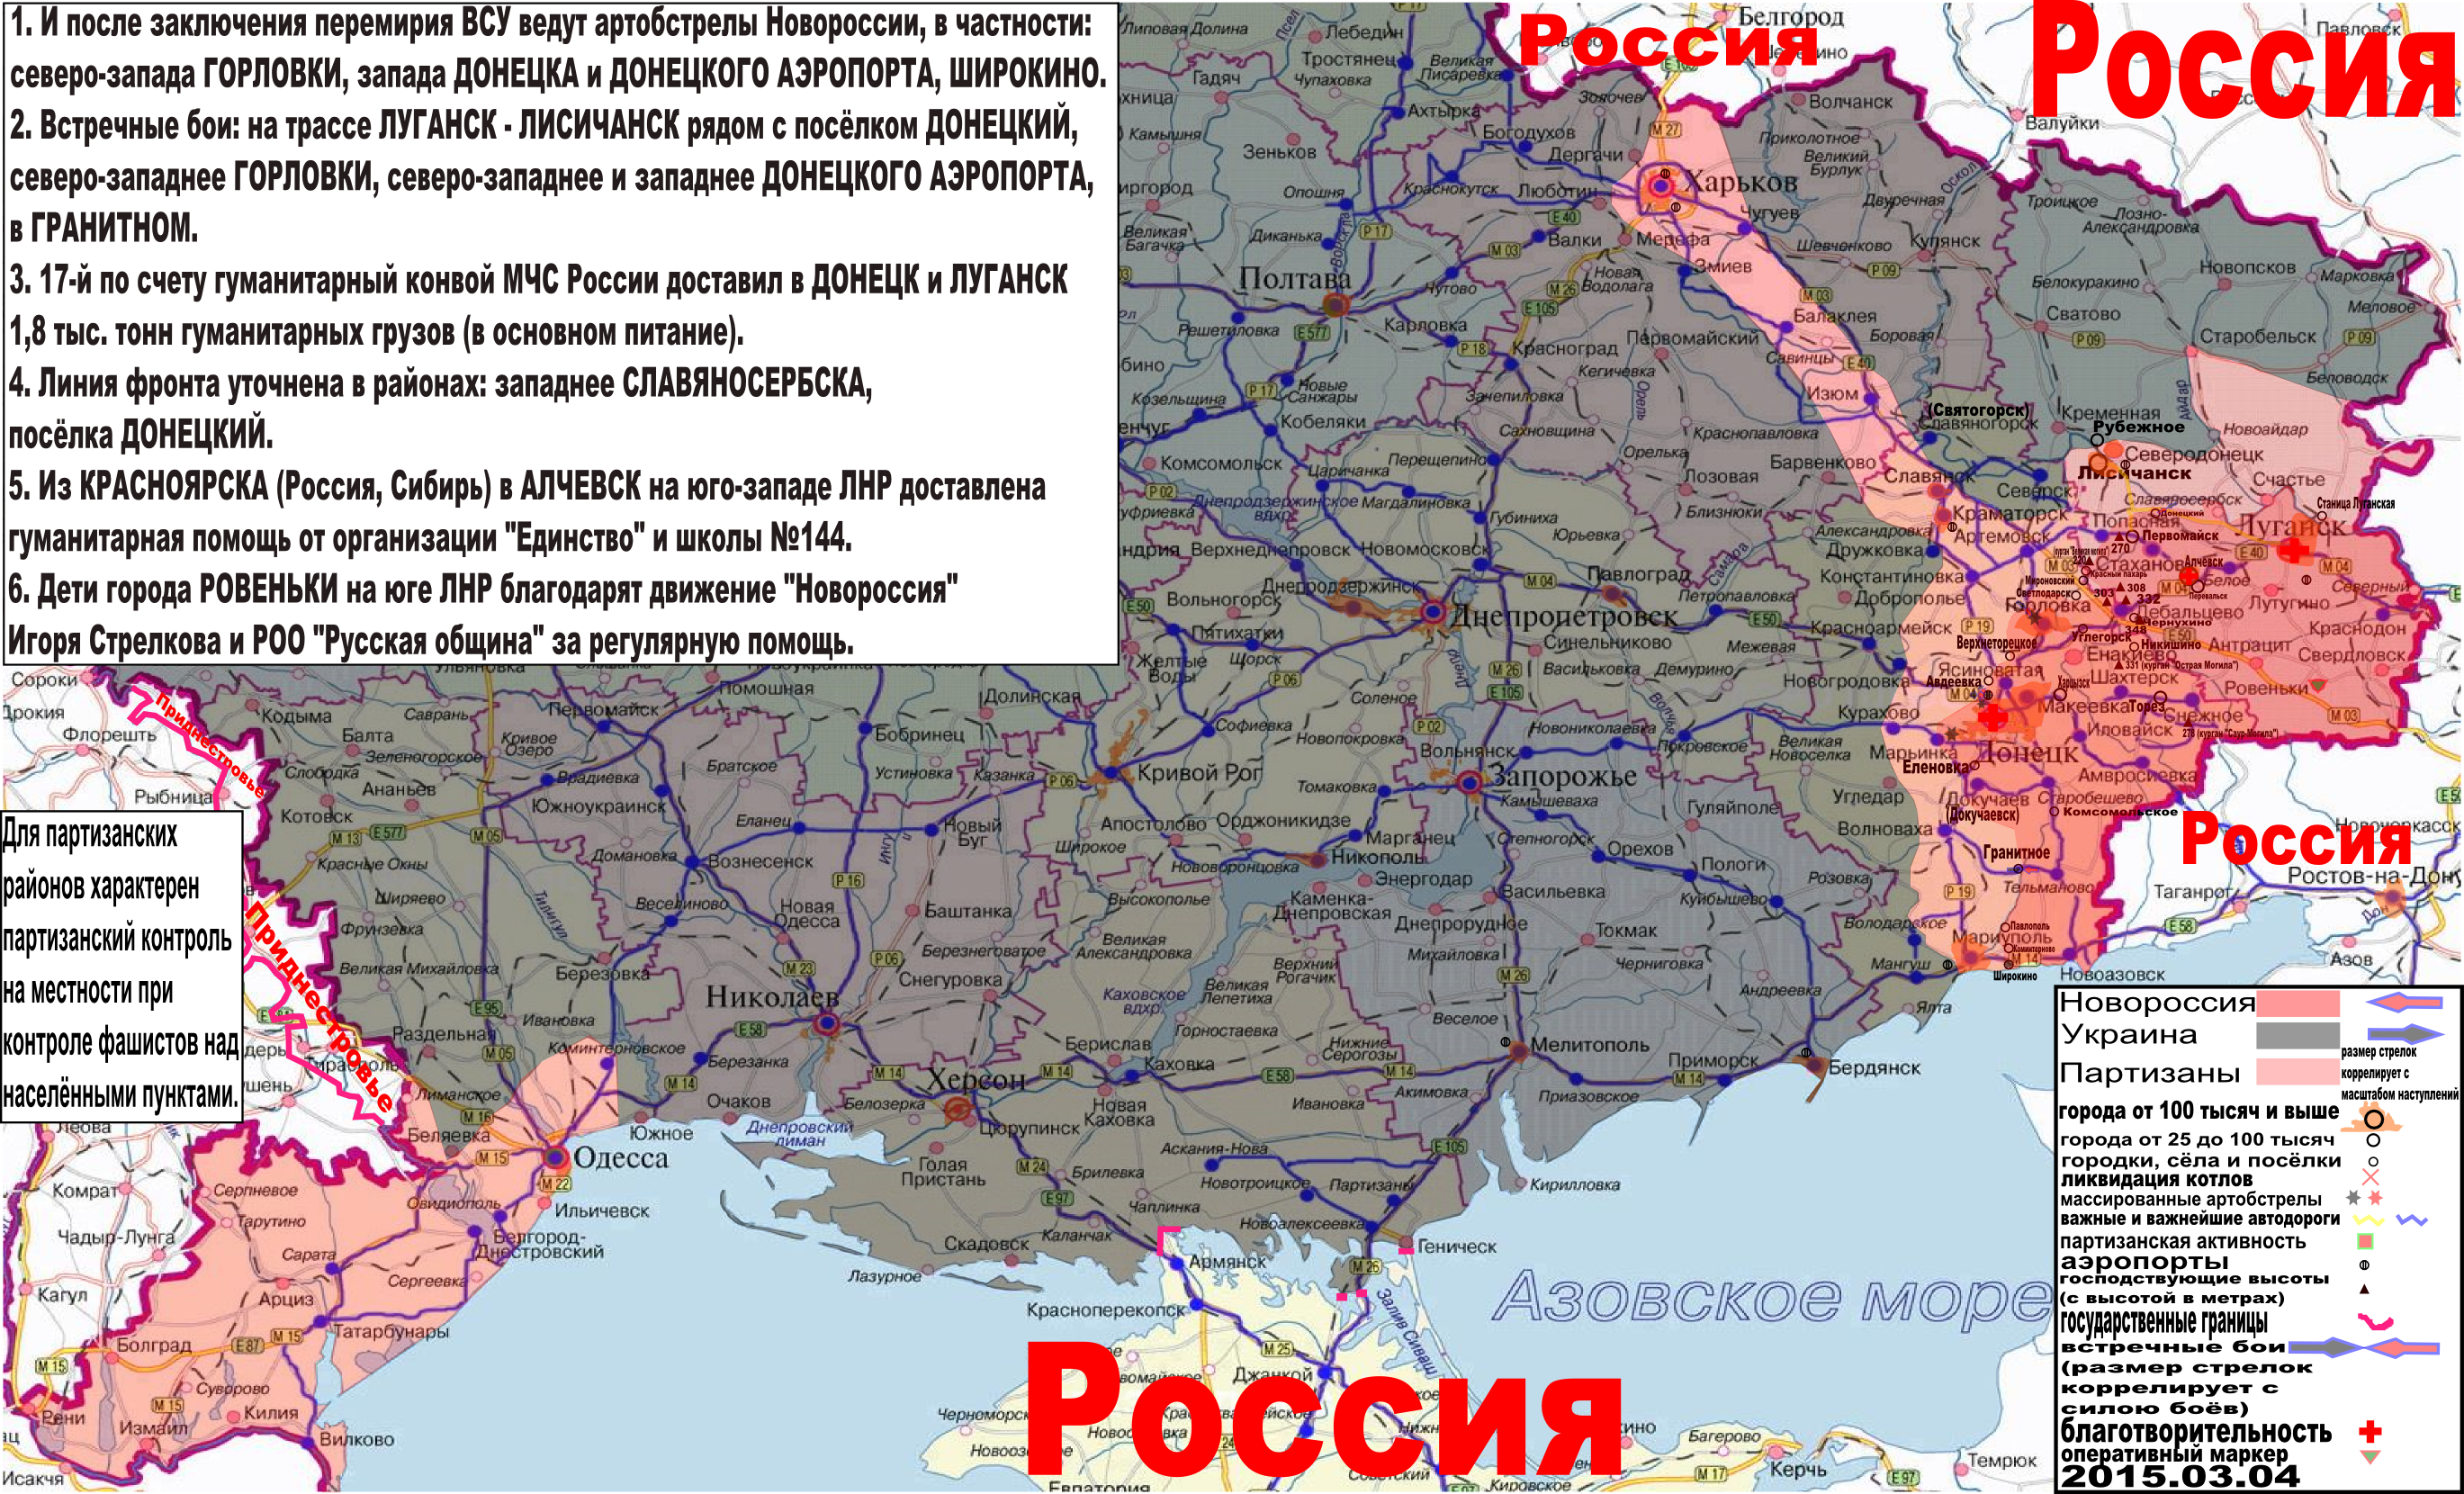 Карта боевых действий и событий в Новороссии с обозначением зон партизанской активности за 4 марта 2015